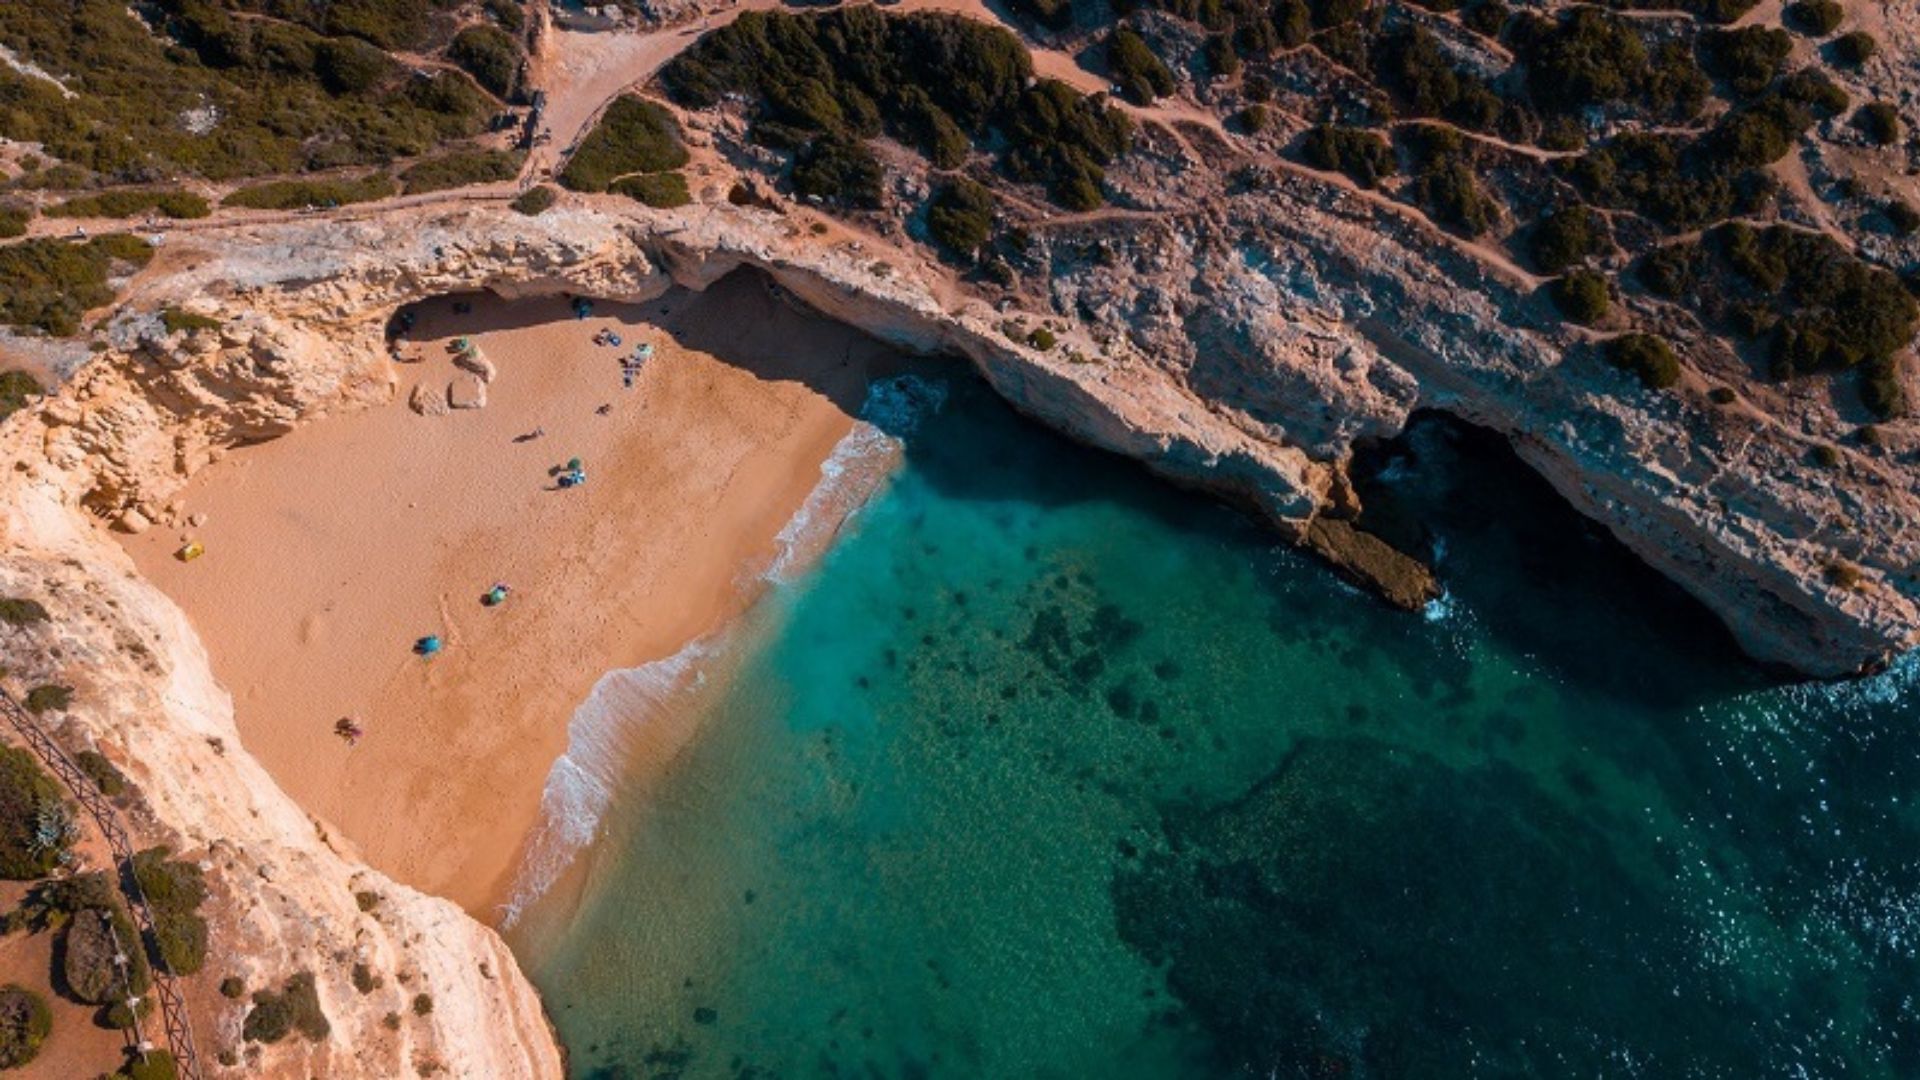 Descubra as praias mais bonitas de Portugal.